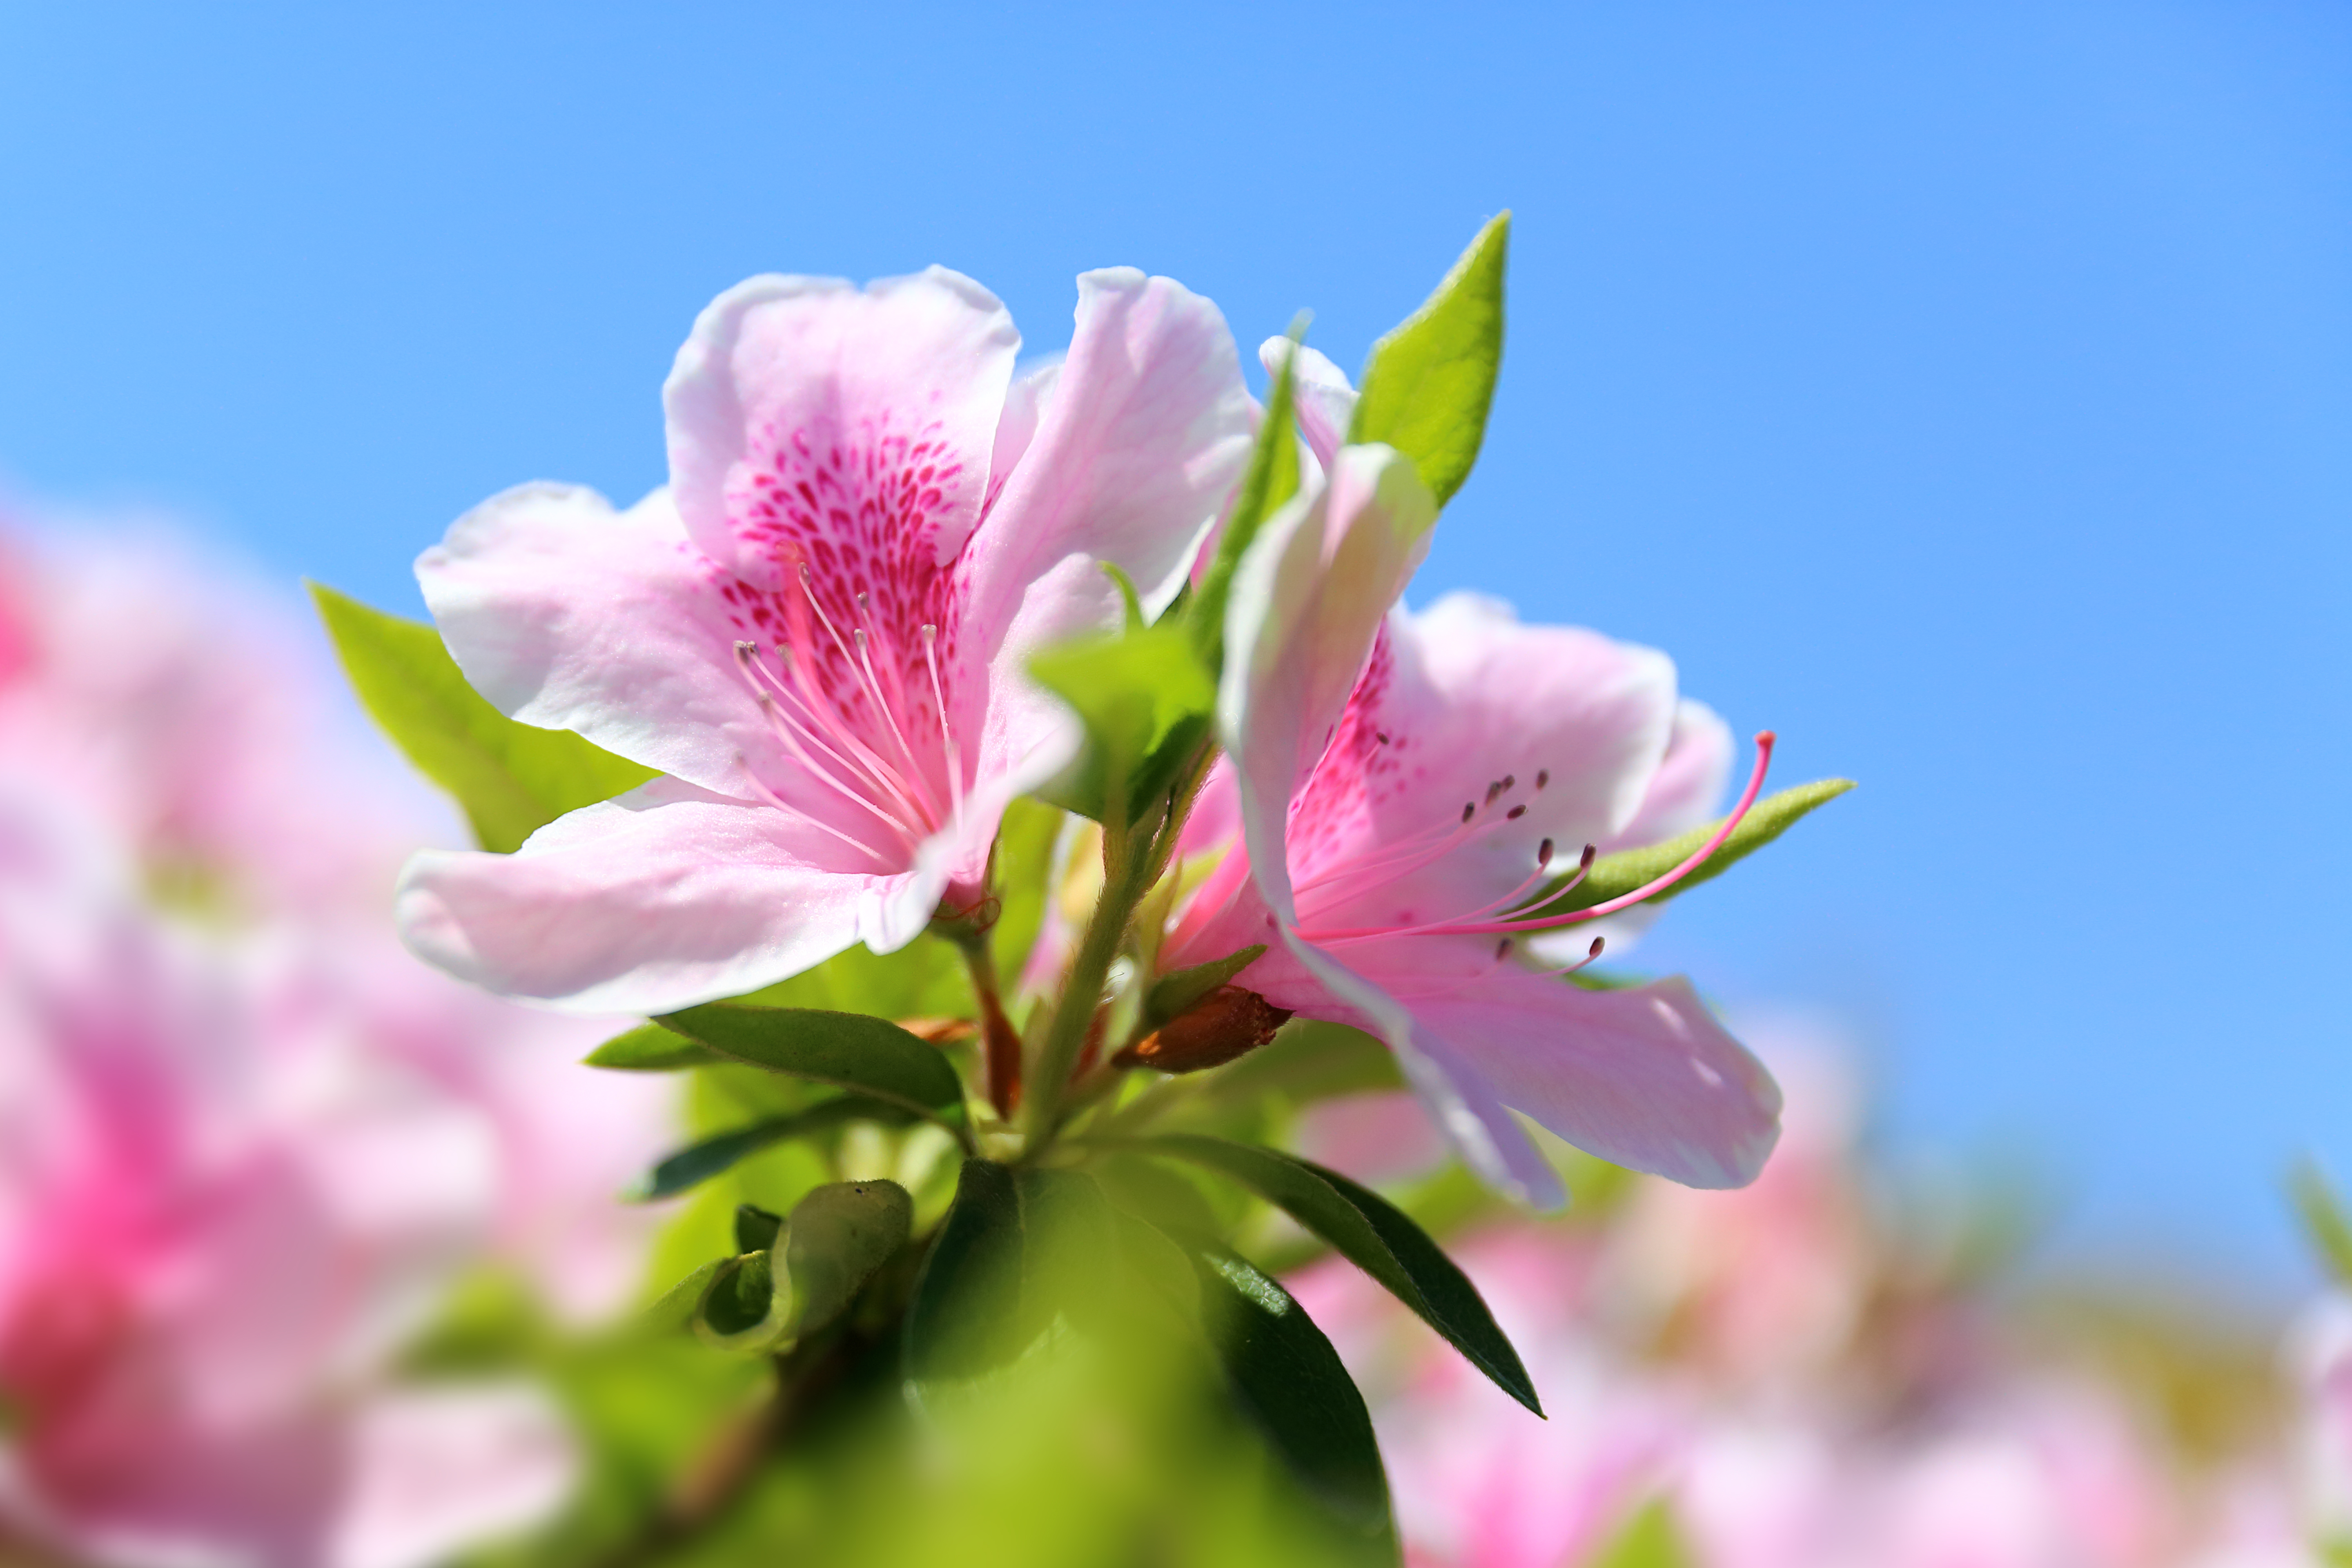 Télécharger des fonds d'écran Rhododendron HD